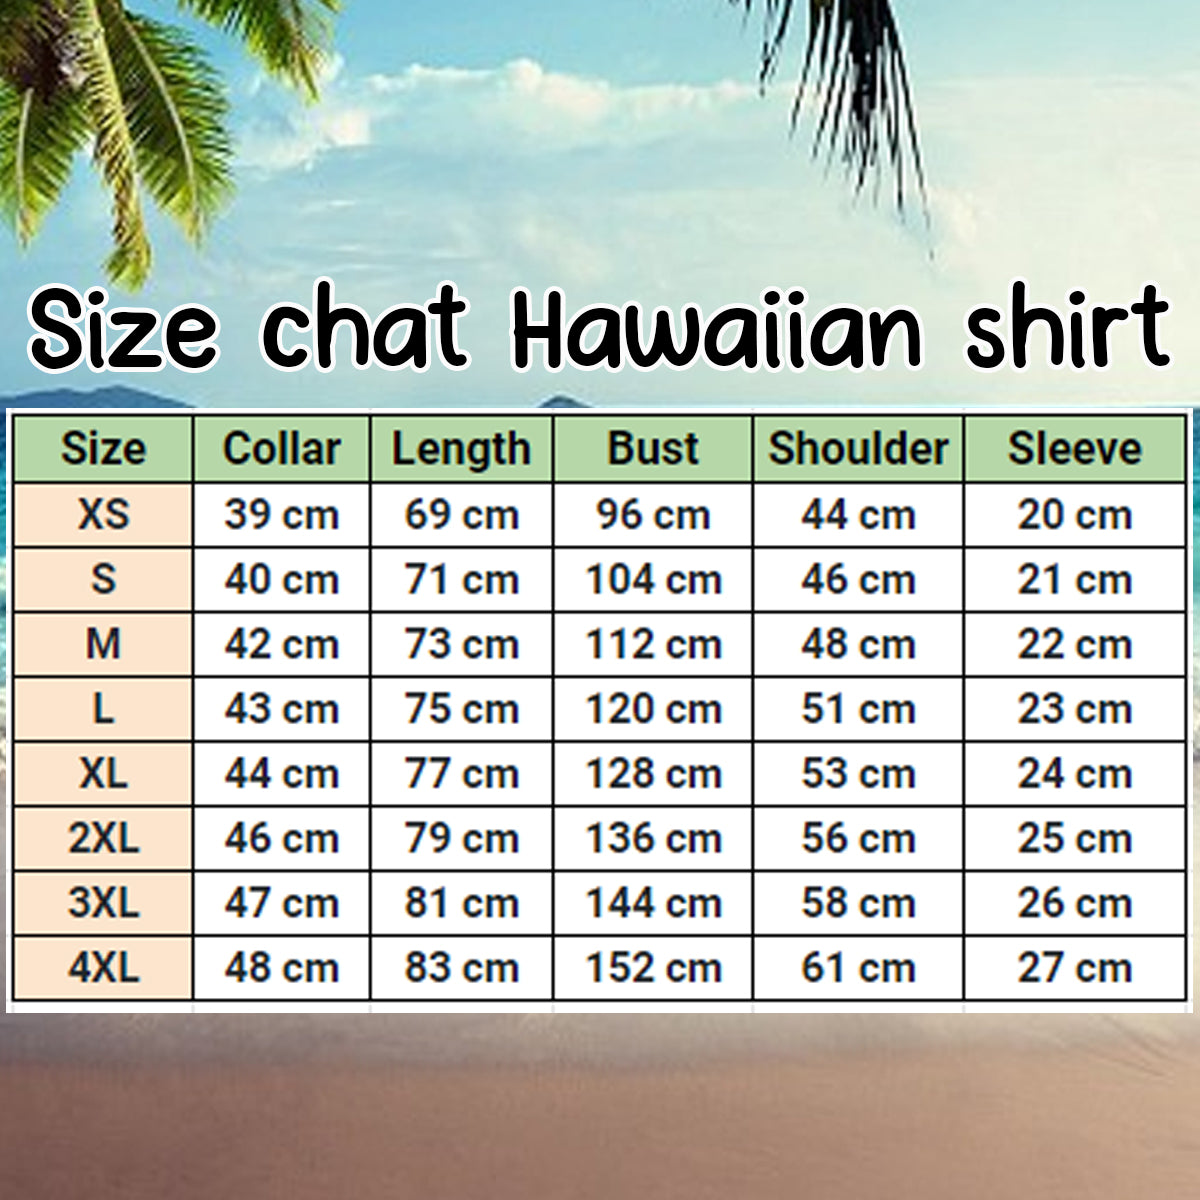 Samoyed Hawaiian Shirt/ Hawaiian shirt vintage Floral Dog/ Men